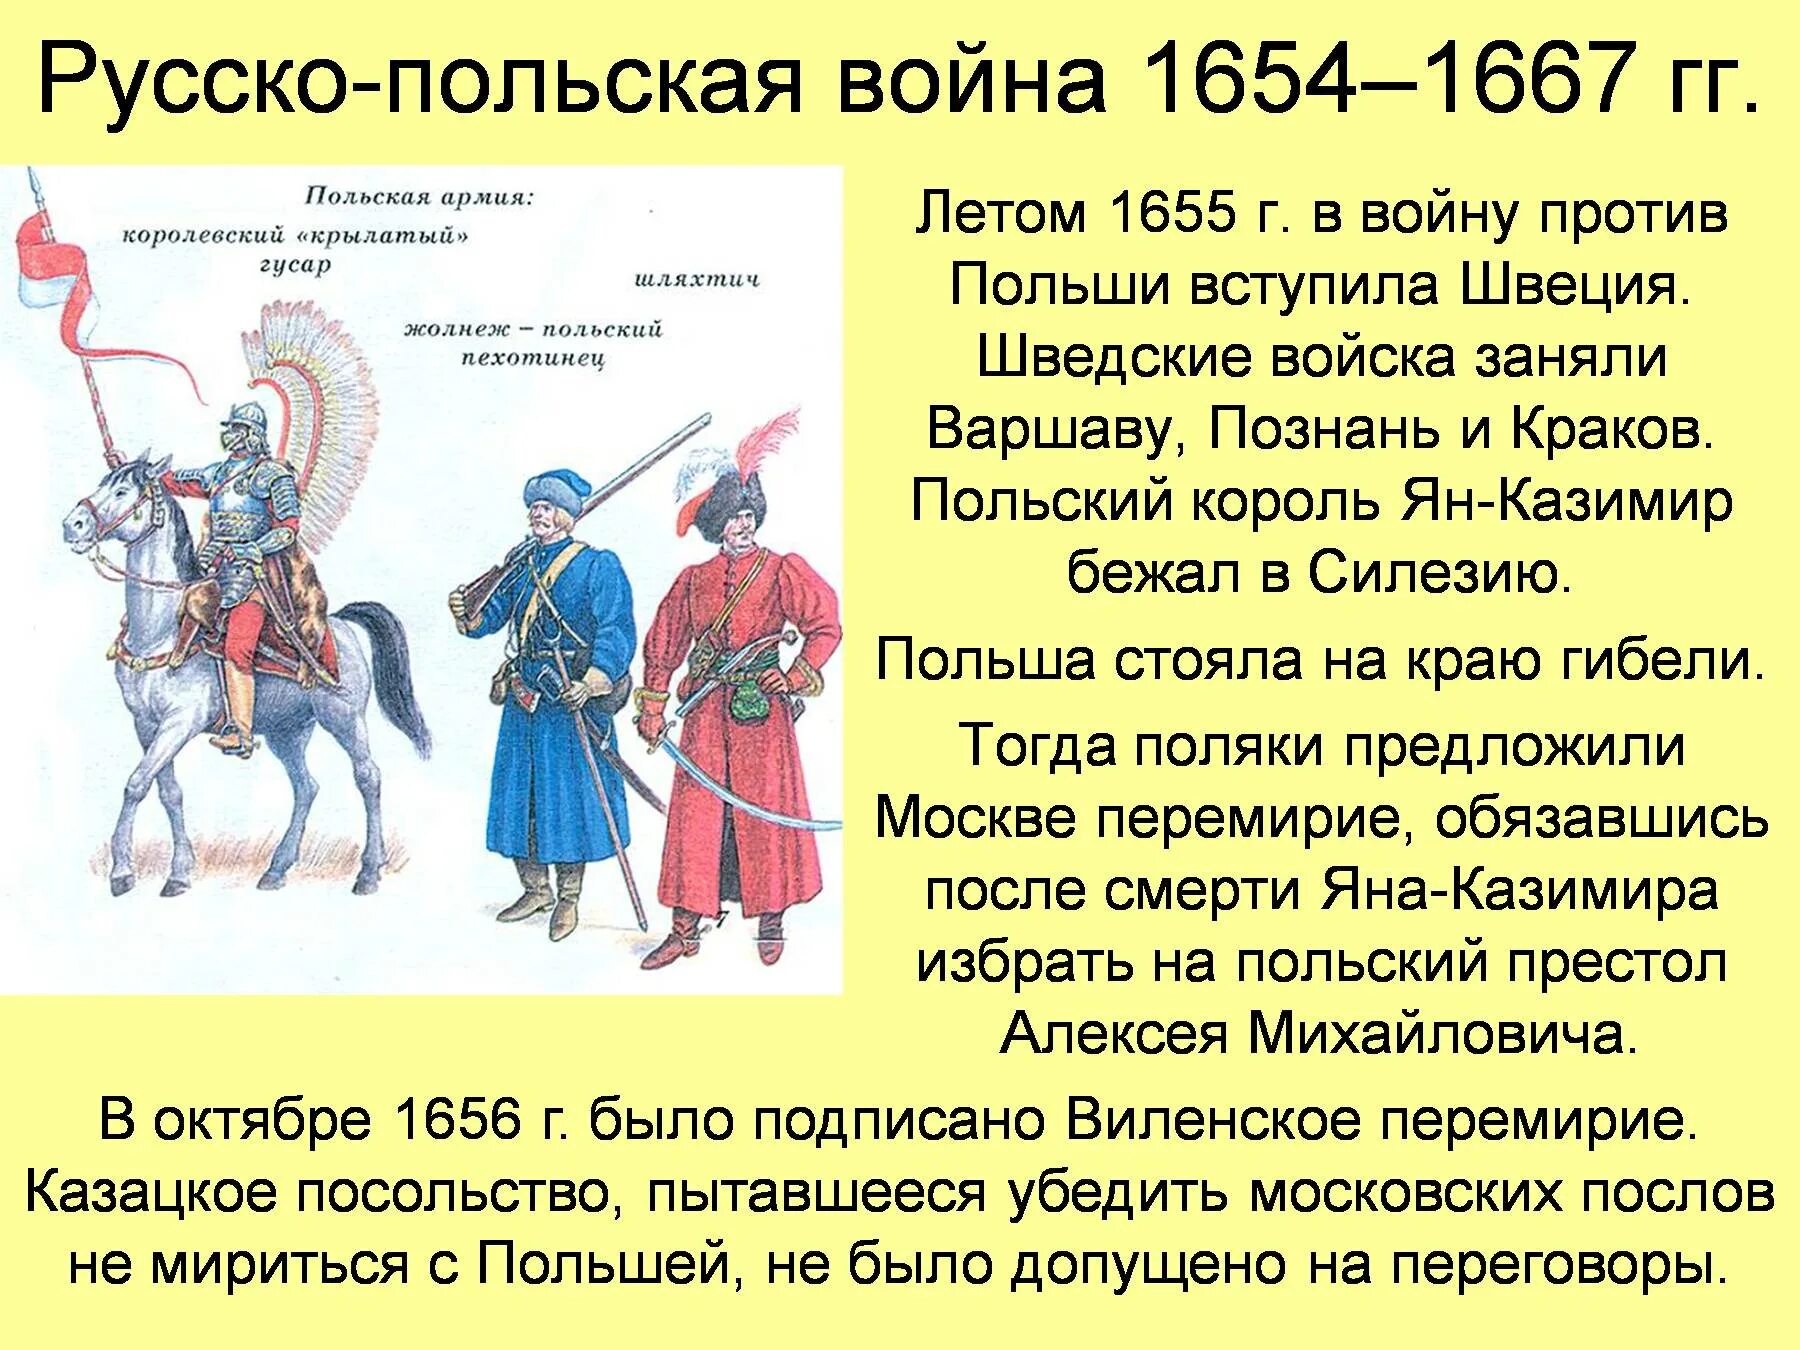 Русского польской войне 1654-1667 гг.,.